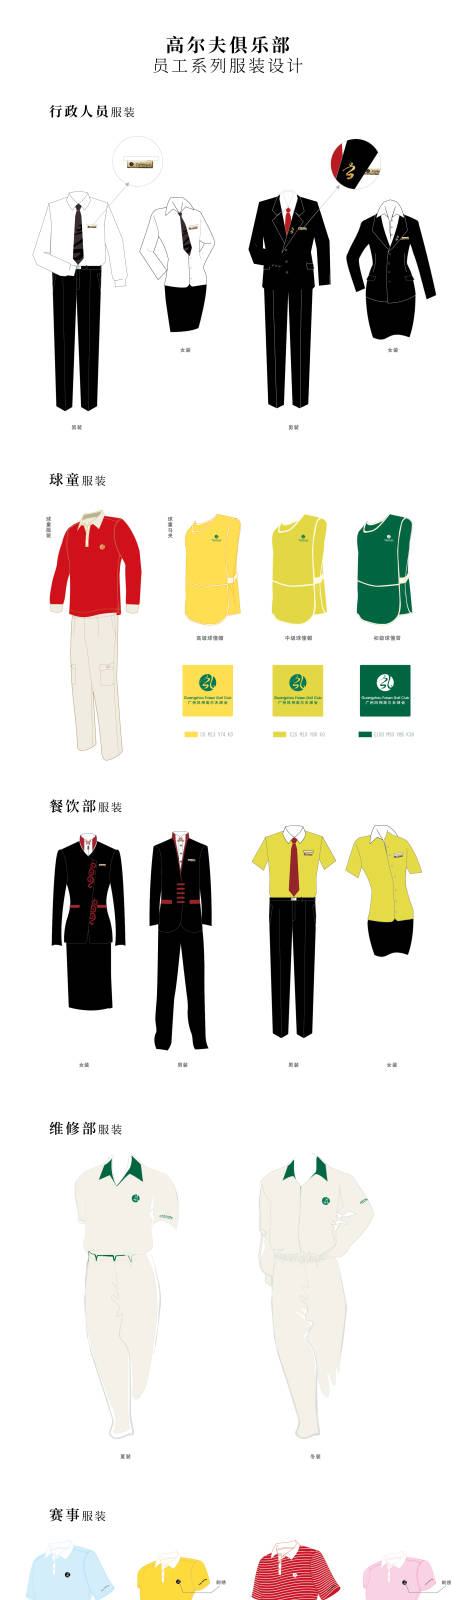 高尔夫俱乐部系列服饰设计